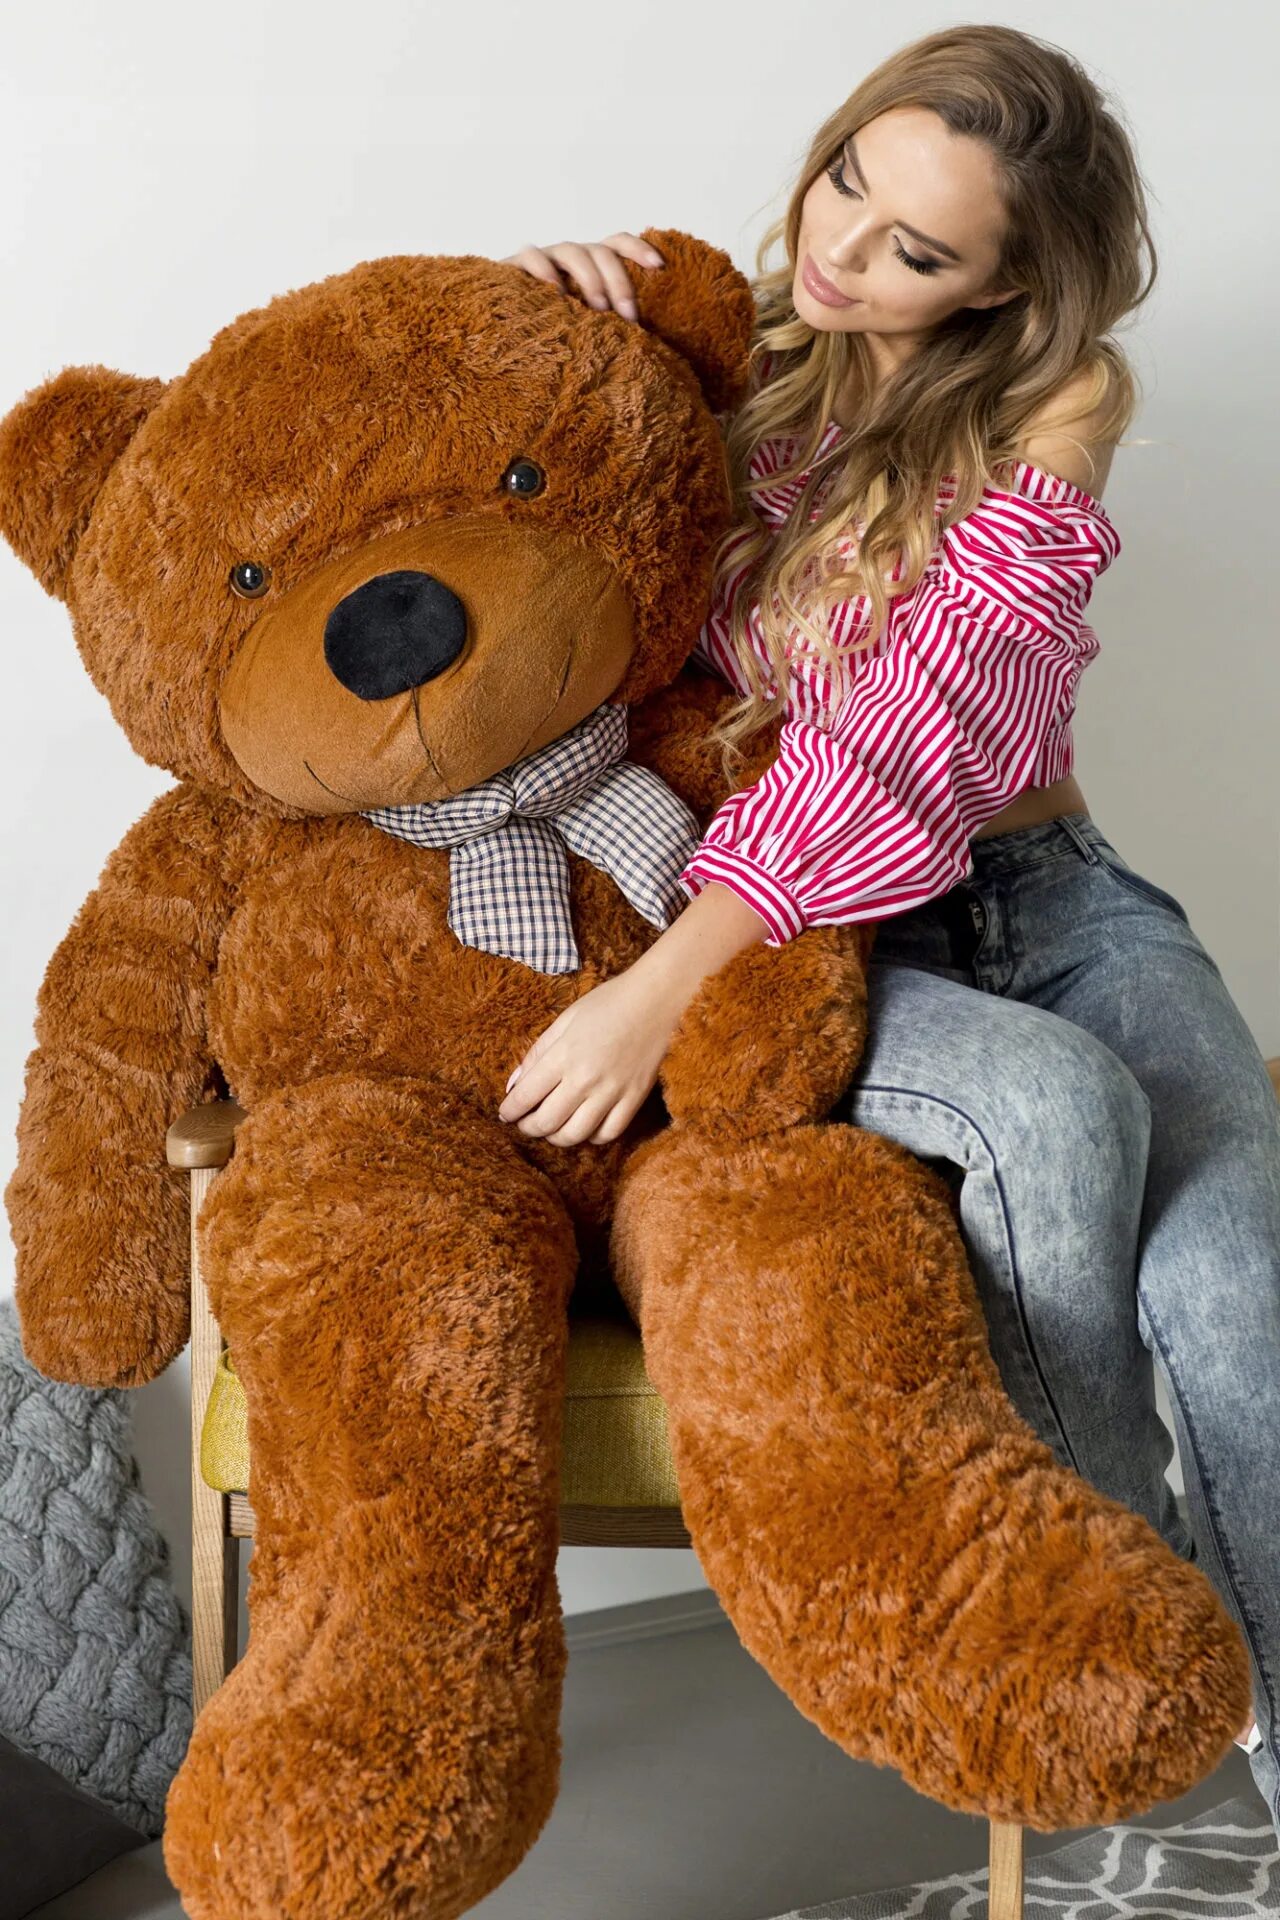 A brown teddy bear. Плюшевый медведь. Большой плюшевый медведь. Плюшевые игрушки для девушки. Плюшевый медведь средний.